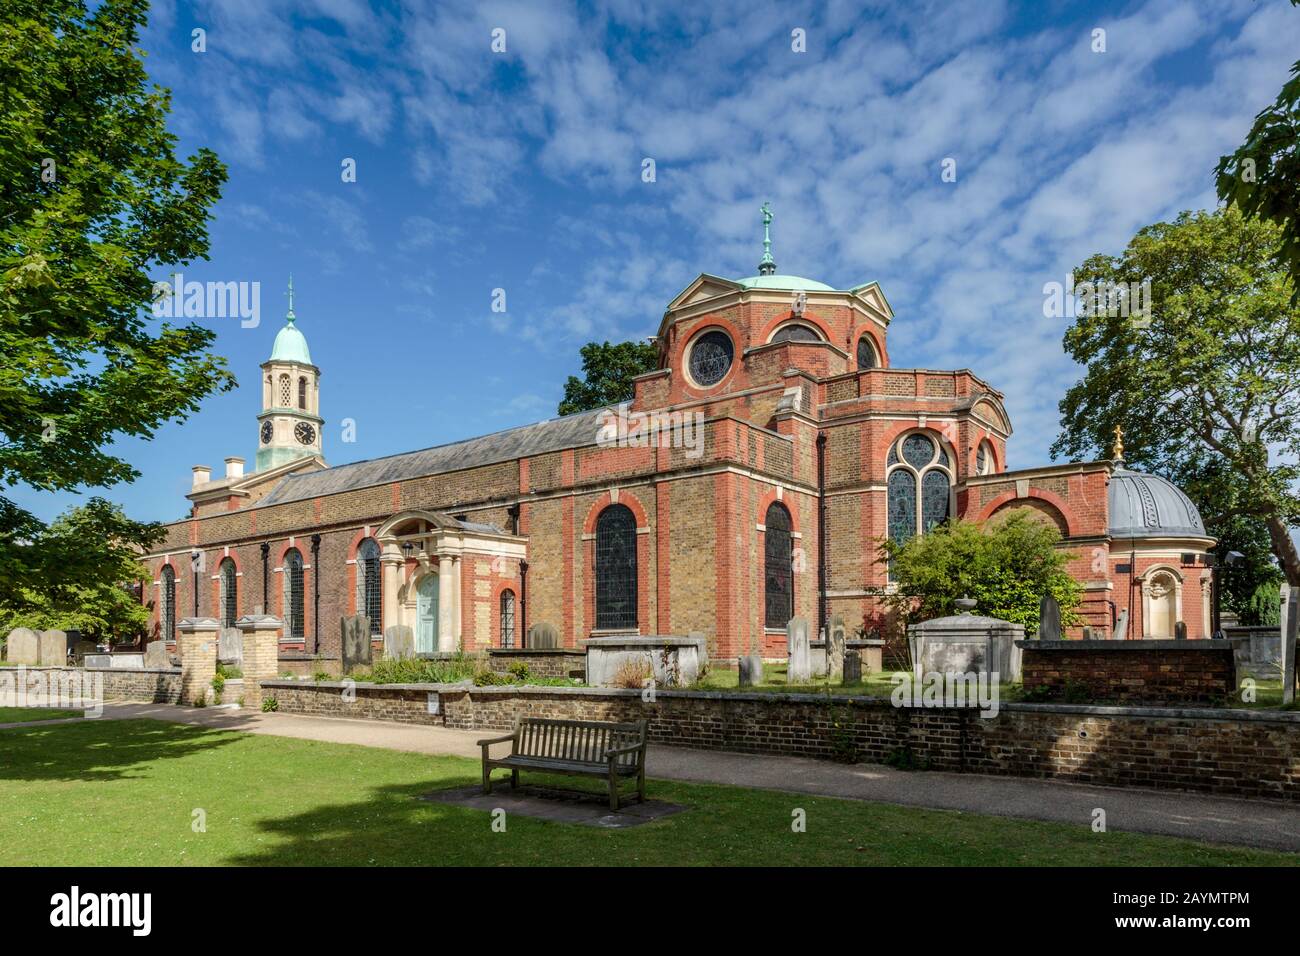 L'église St Anne est une église paroissiale de Kew dans le quartier de Londres de Richmond upon Thames, dans l'ouest de Londres. Banque D'Images